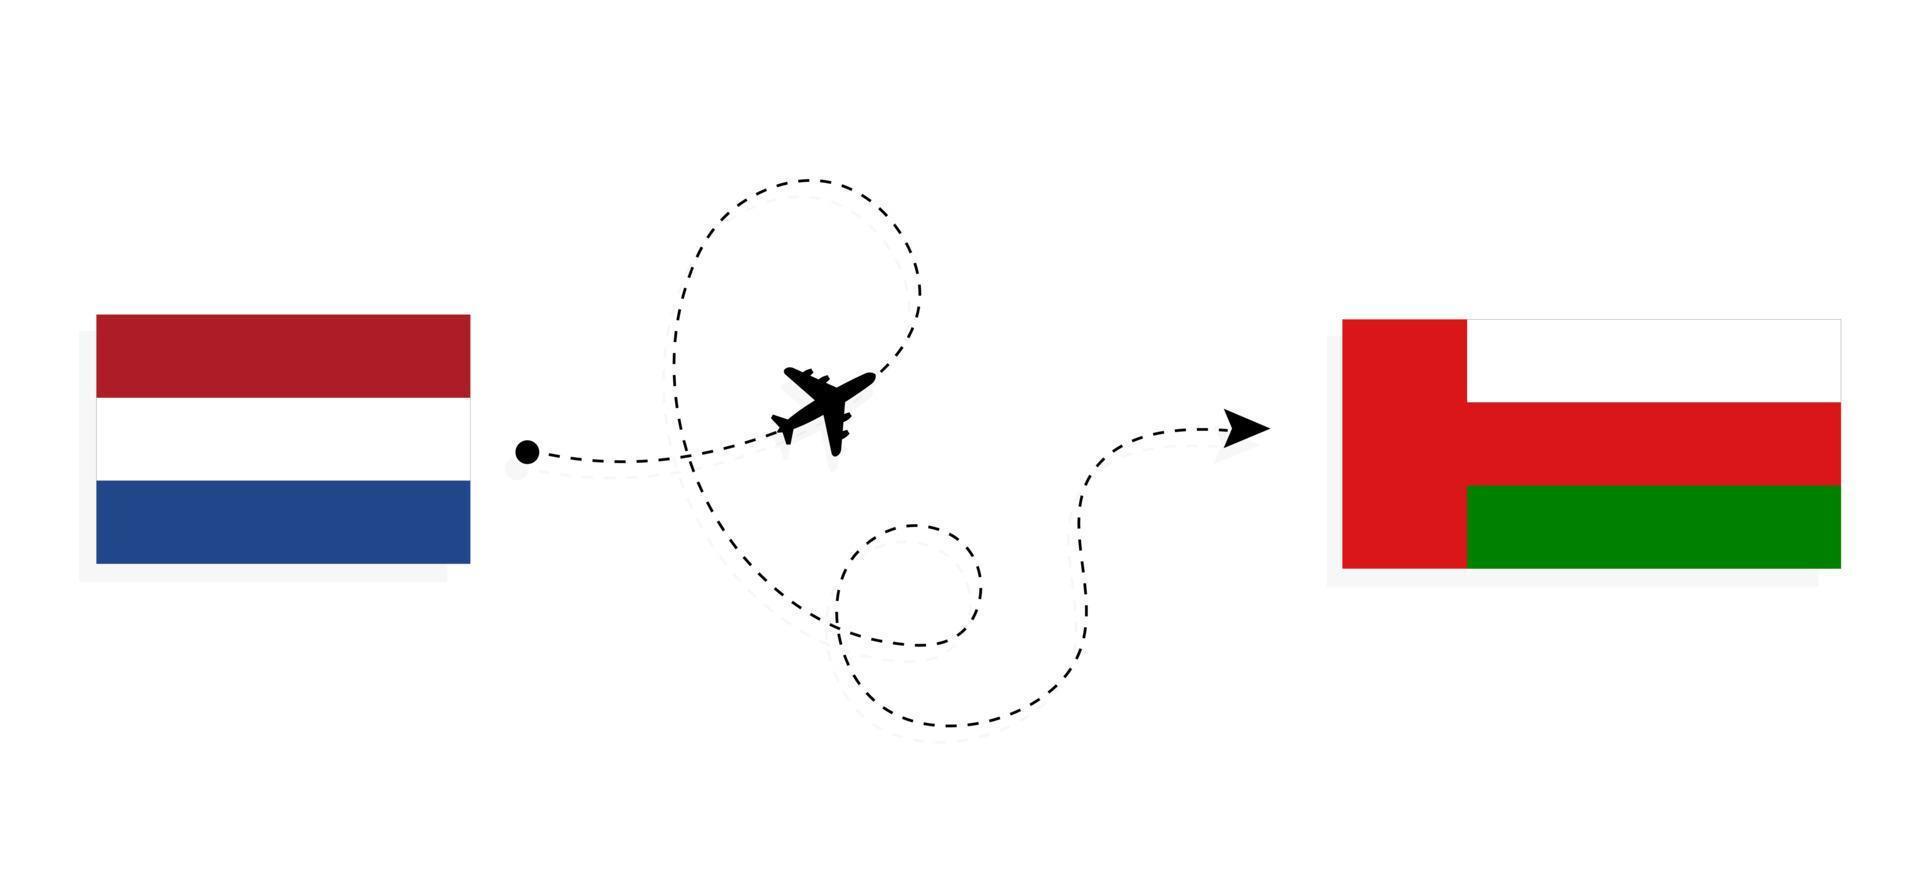 flyg och resor från Nederländerna till Oman med passagerarflygplan vektor